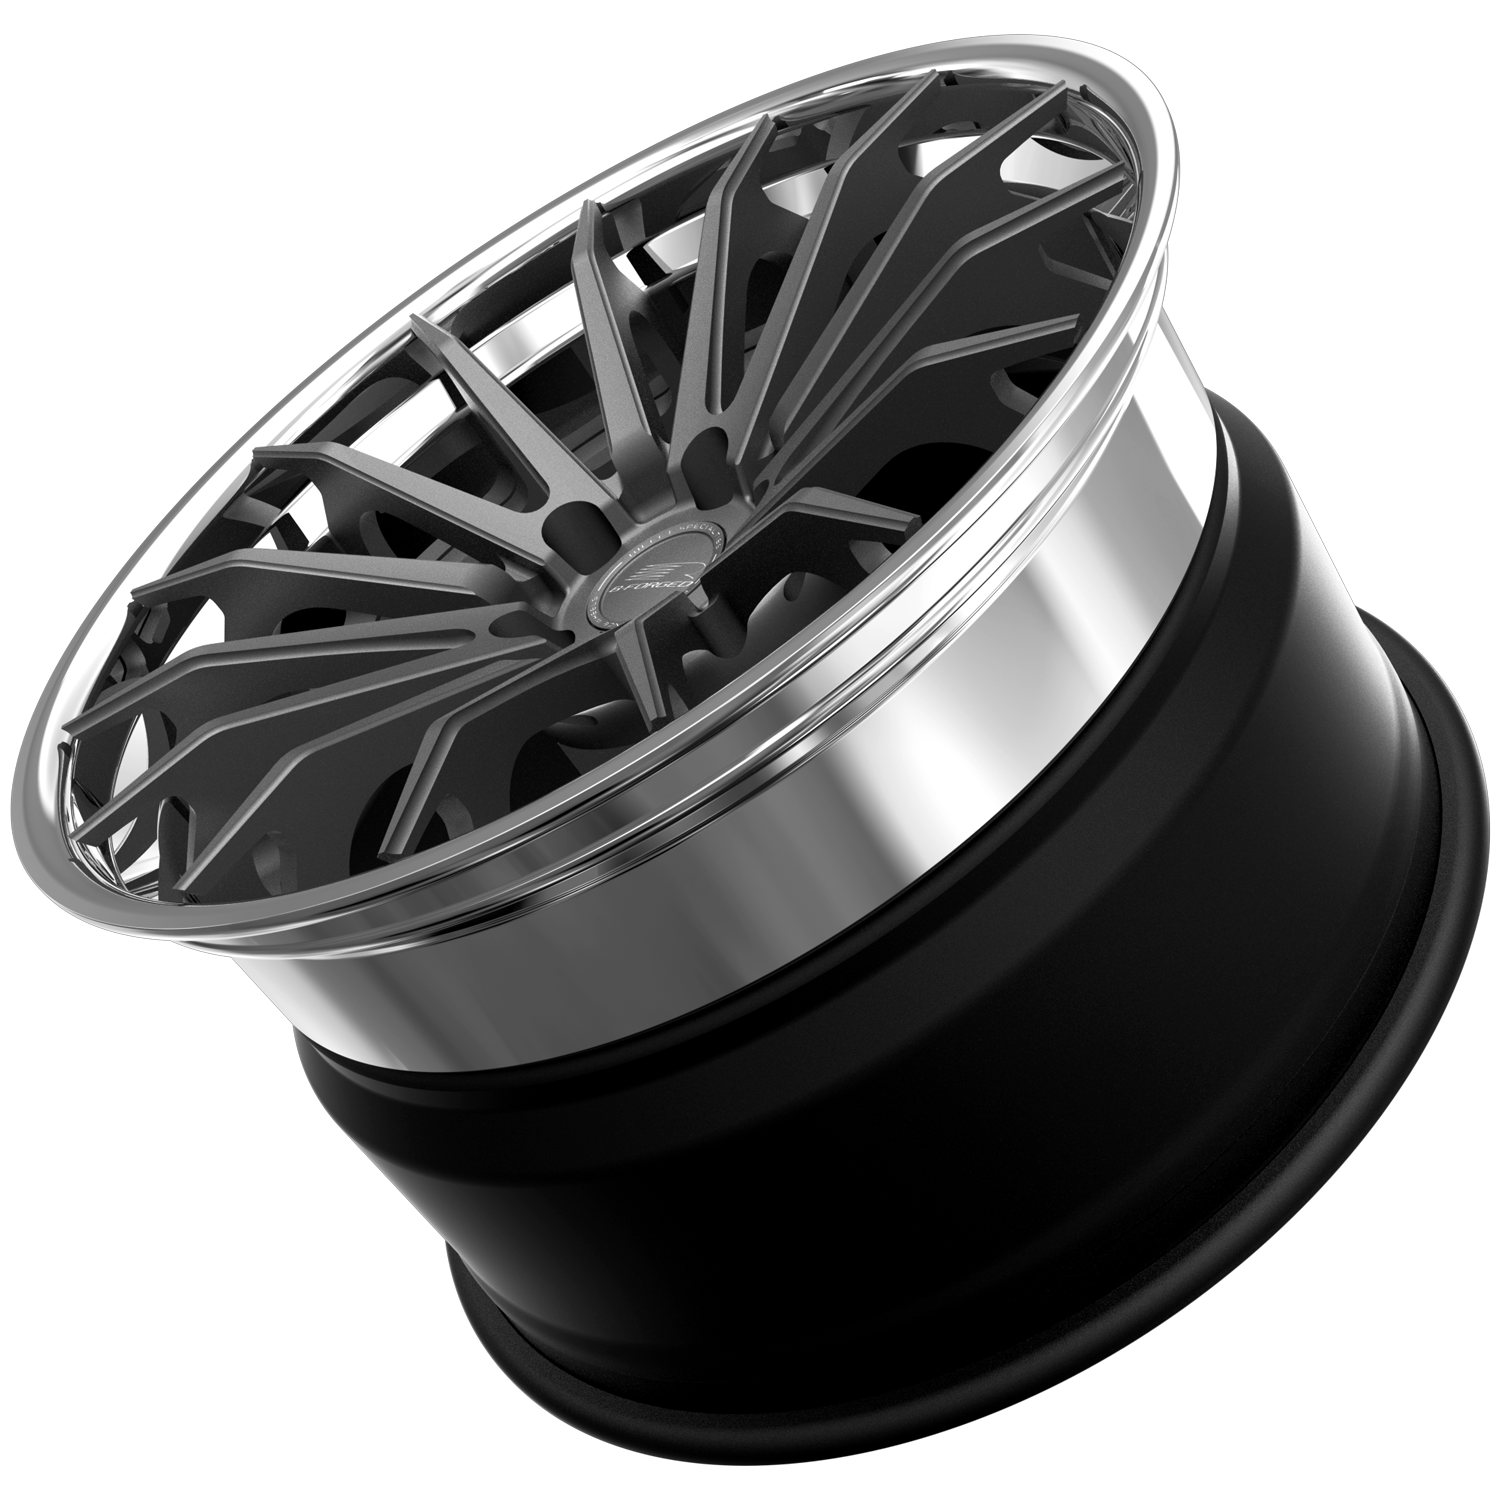 B-Forged wheels 252 SXL